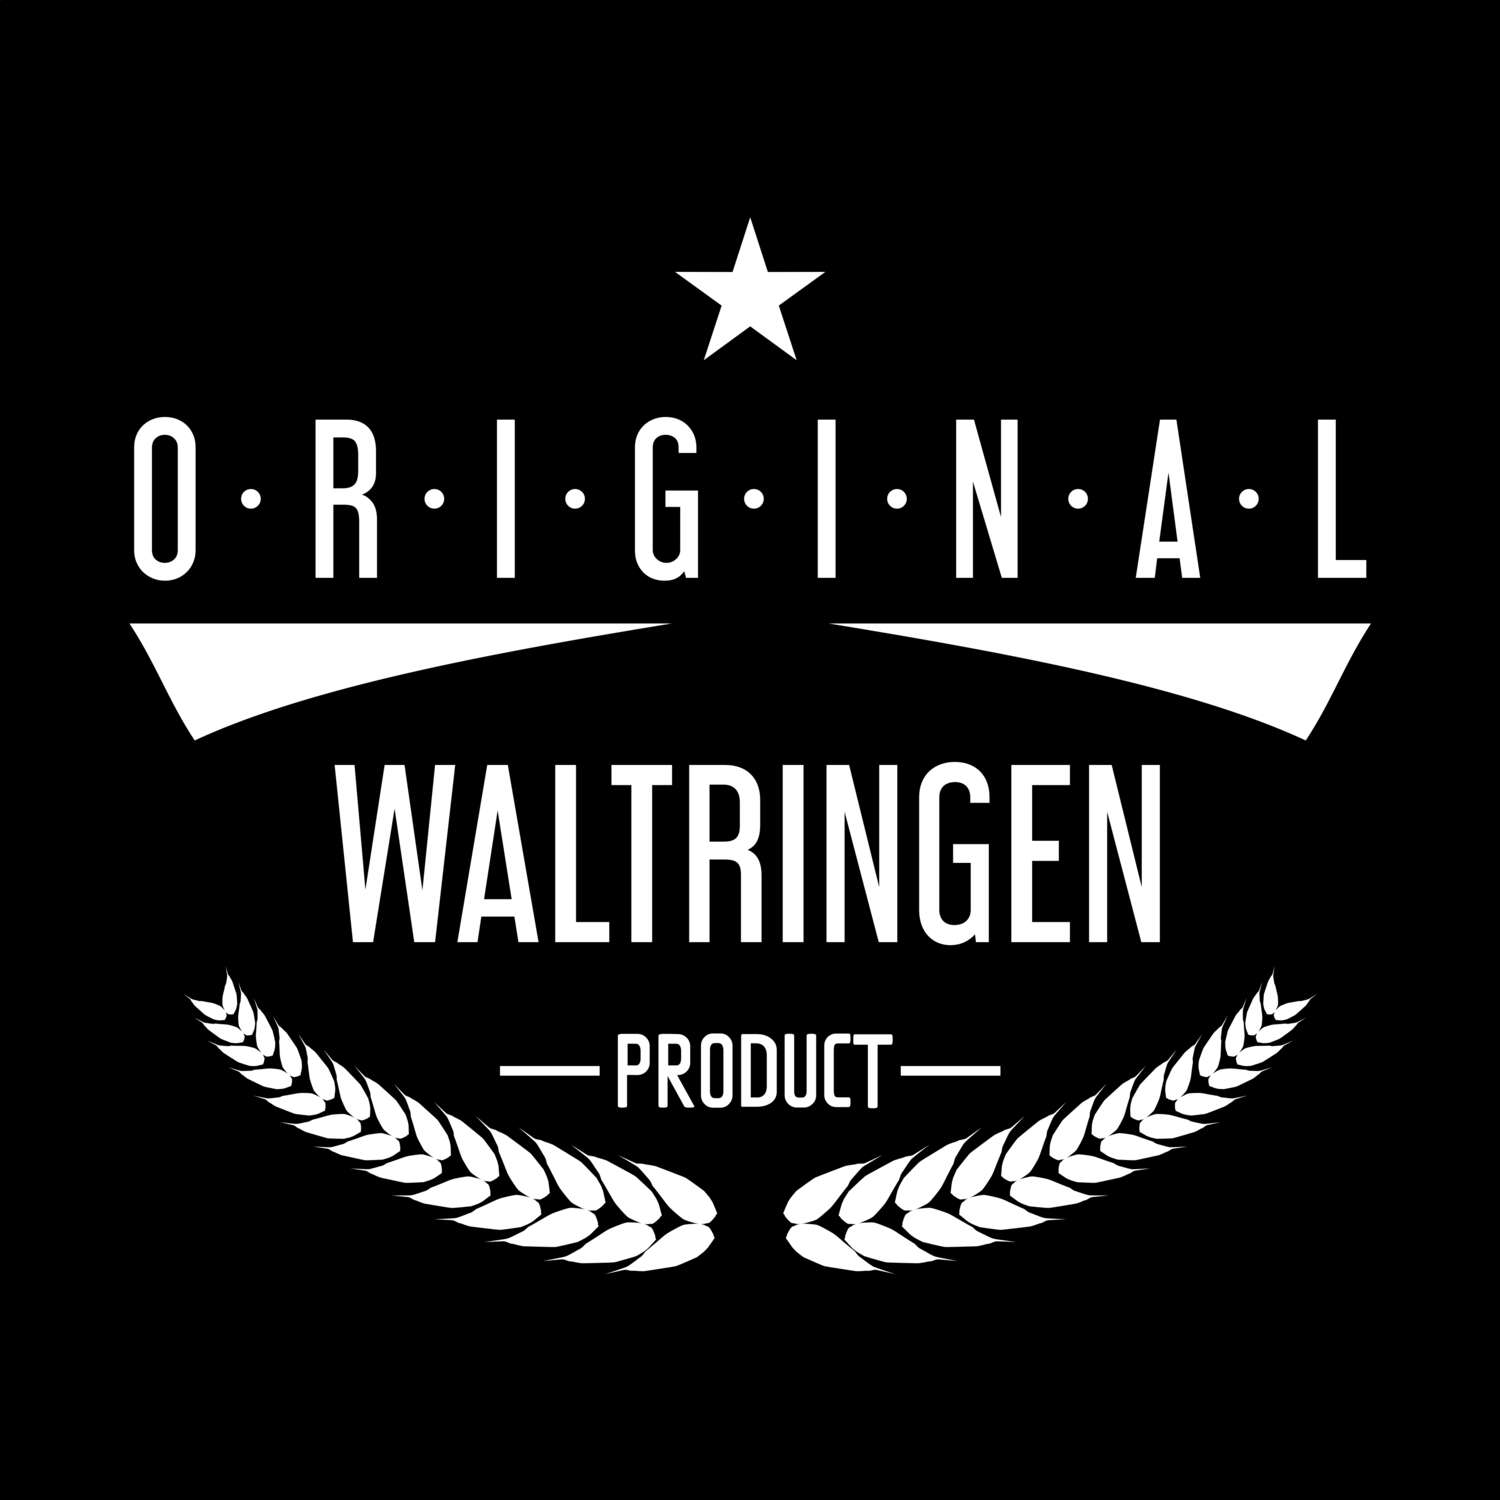 Waltringen T-Shirt »Original Product«